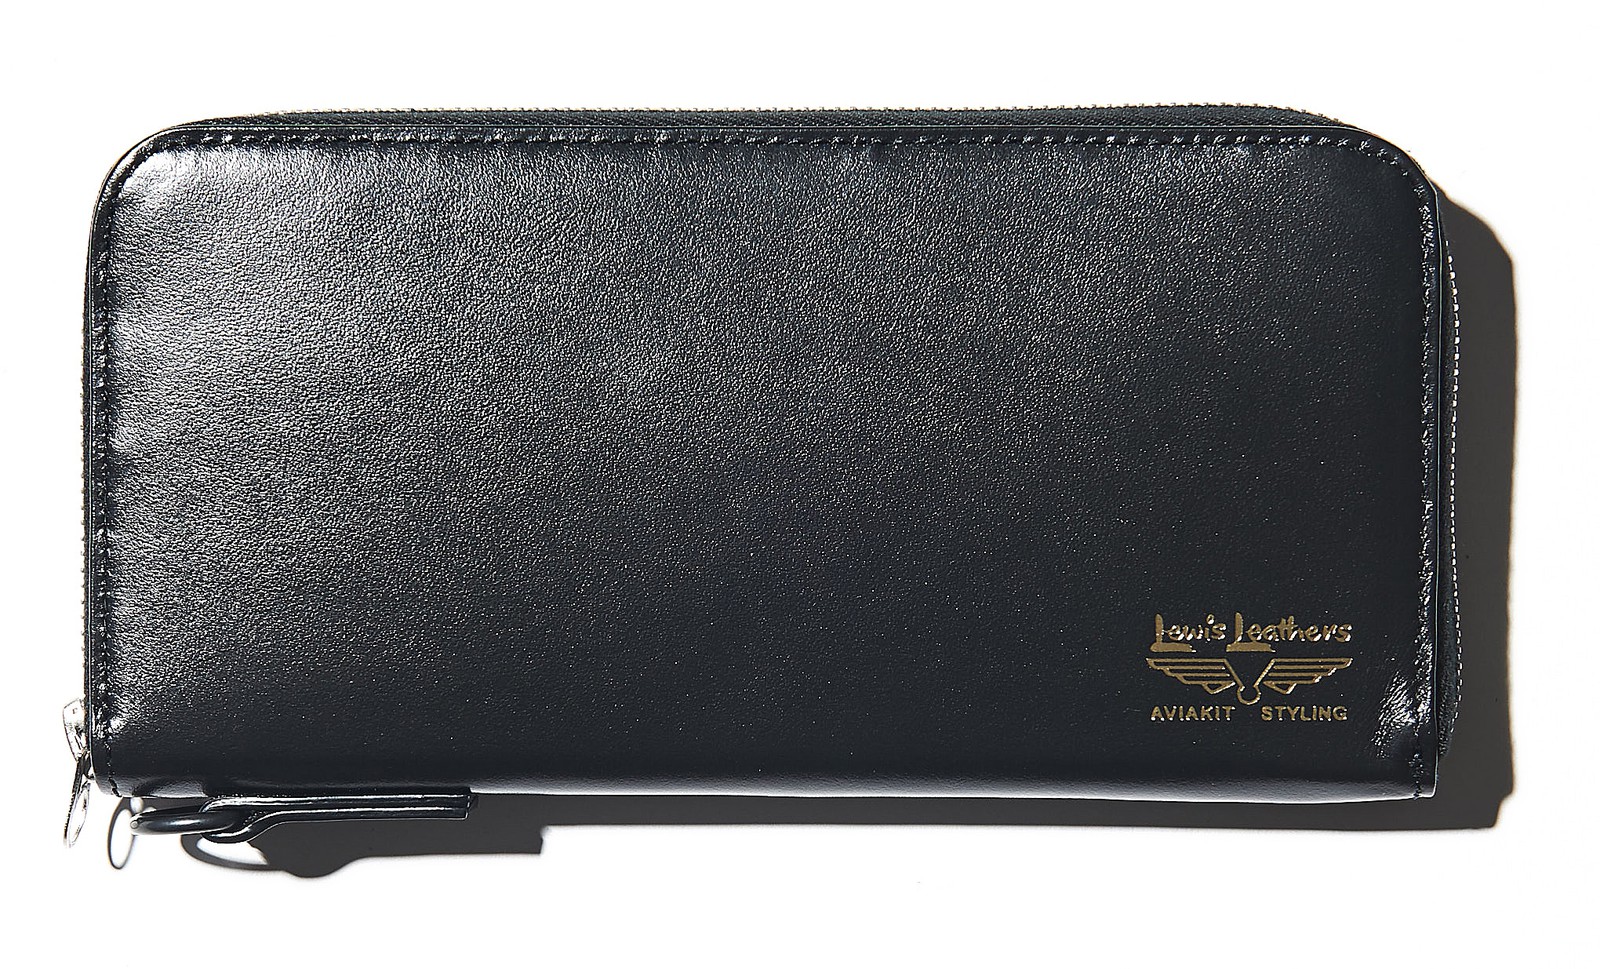 最新】吉田カバン・ポーターのコラボ財布が男前過ぎる件 | アイテム 